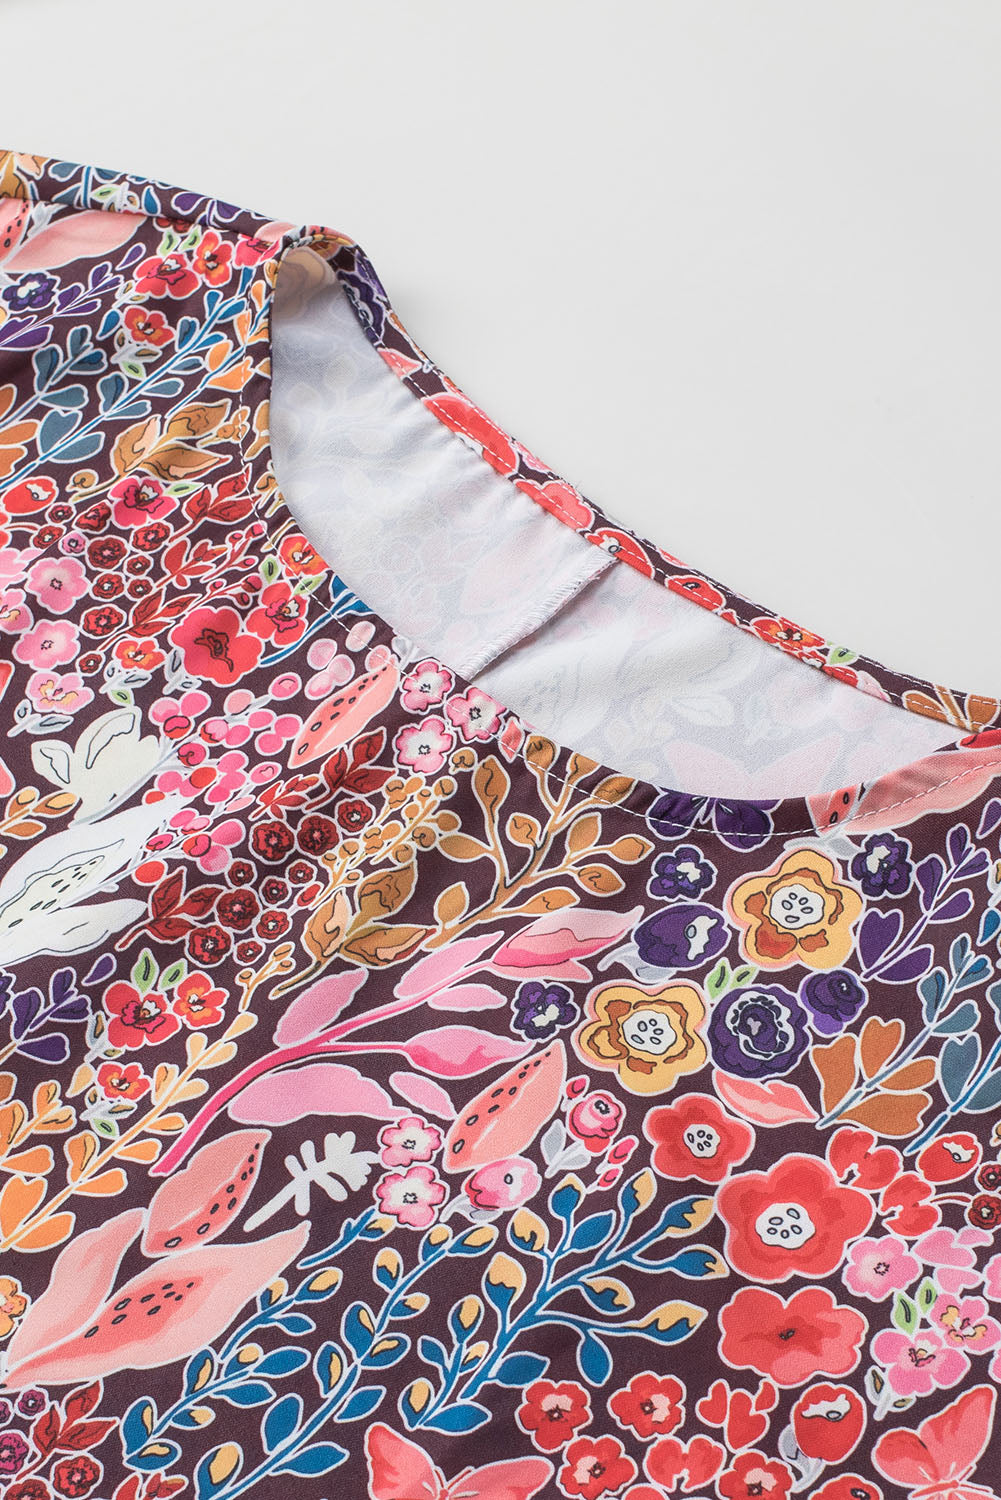 Večbarvna bluza tunika s 3/4 rokavi s cvetličnim potiskom